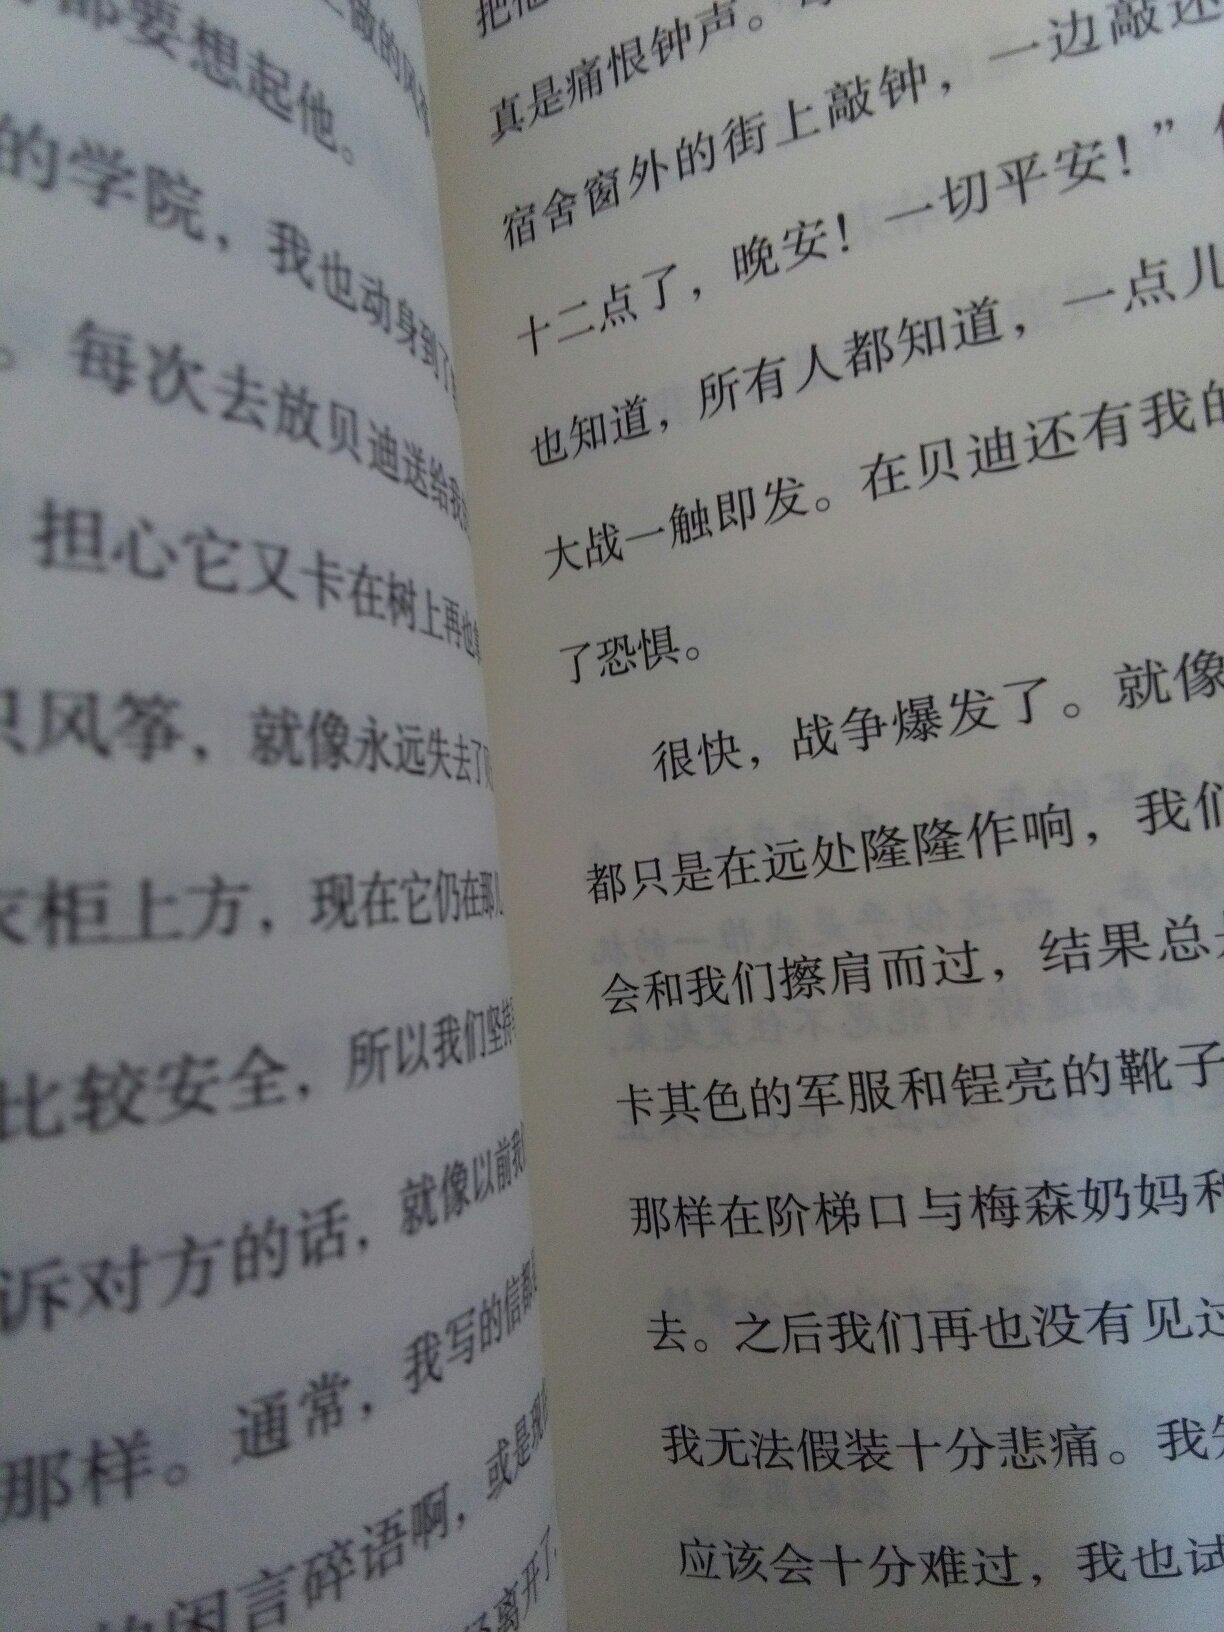 前面是中文，后面是英文，故事较短。